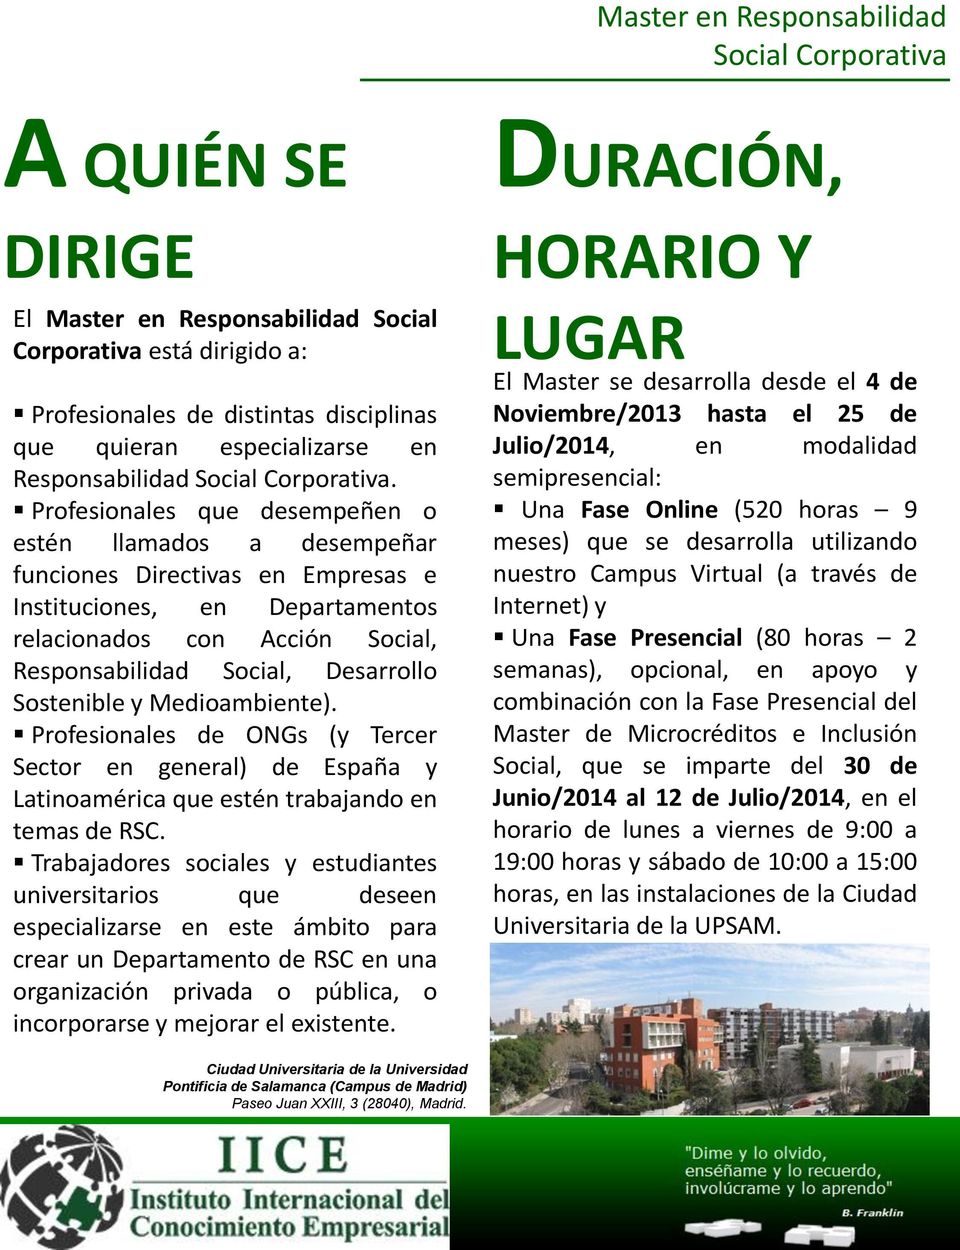 Sostenible y Medioambiente). Profesionales de ONGs (y Tercer Sector en general) de España y Latinoamérica que estén trabajando en temas de RSC.